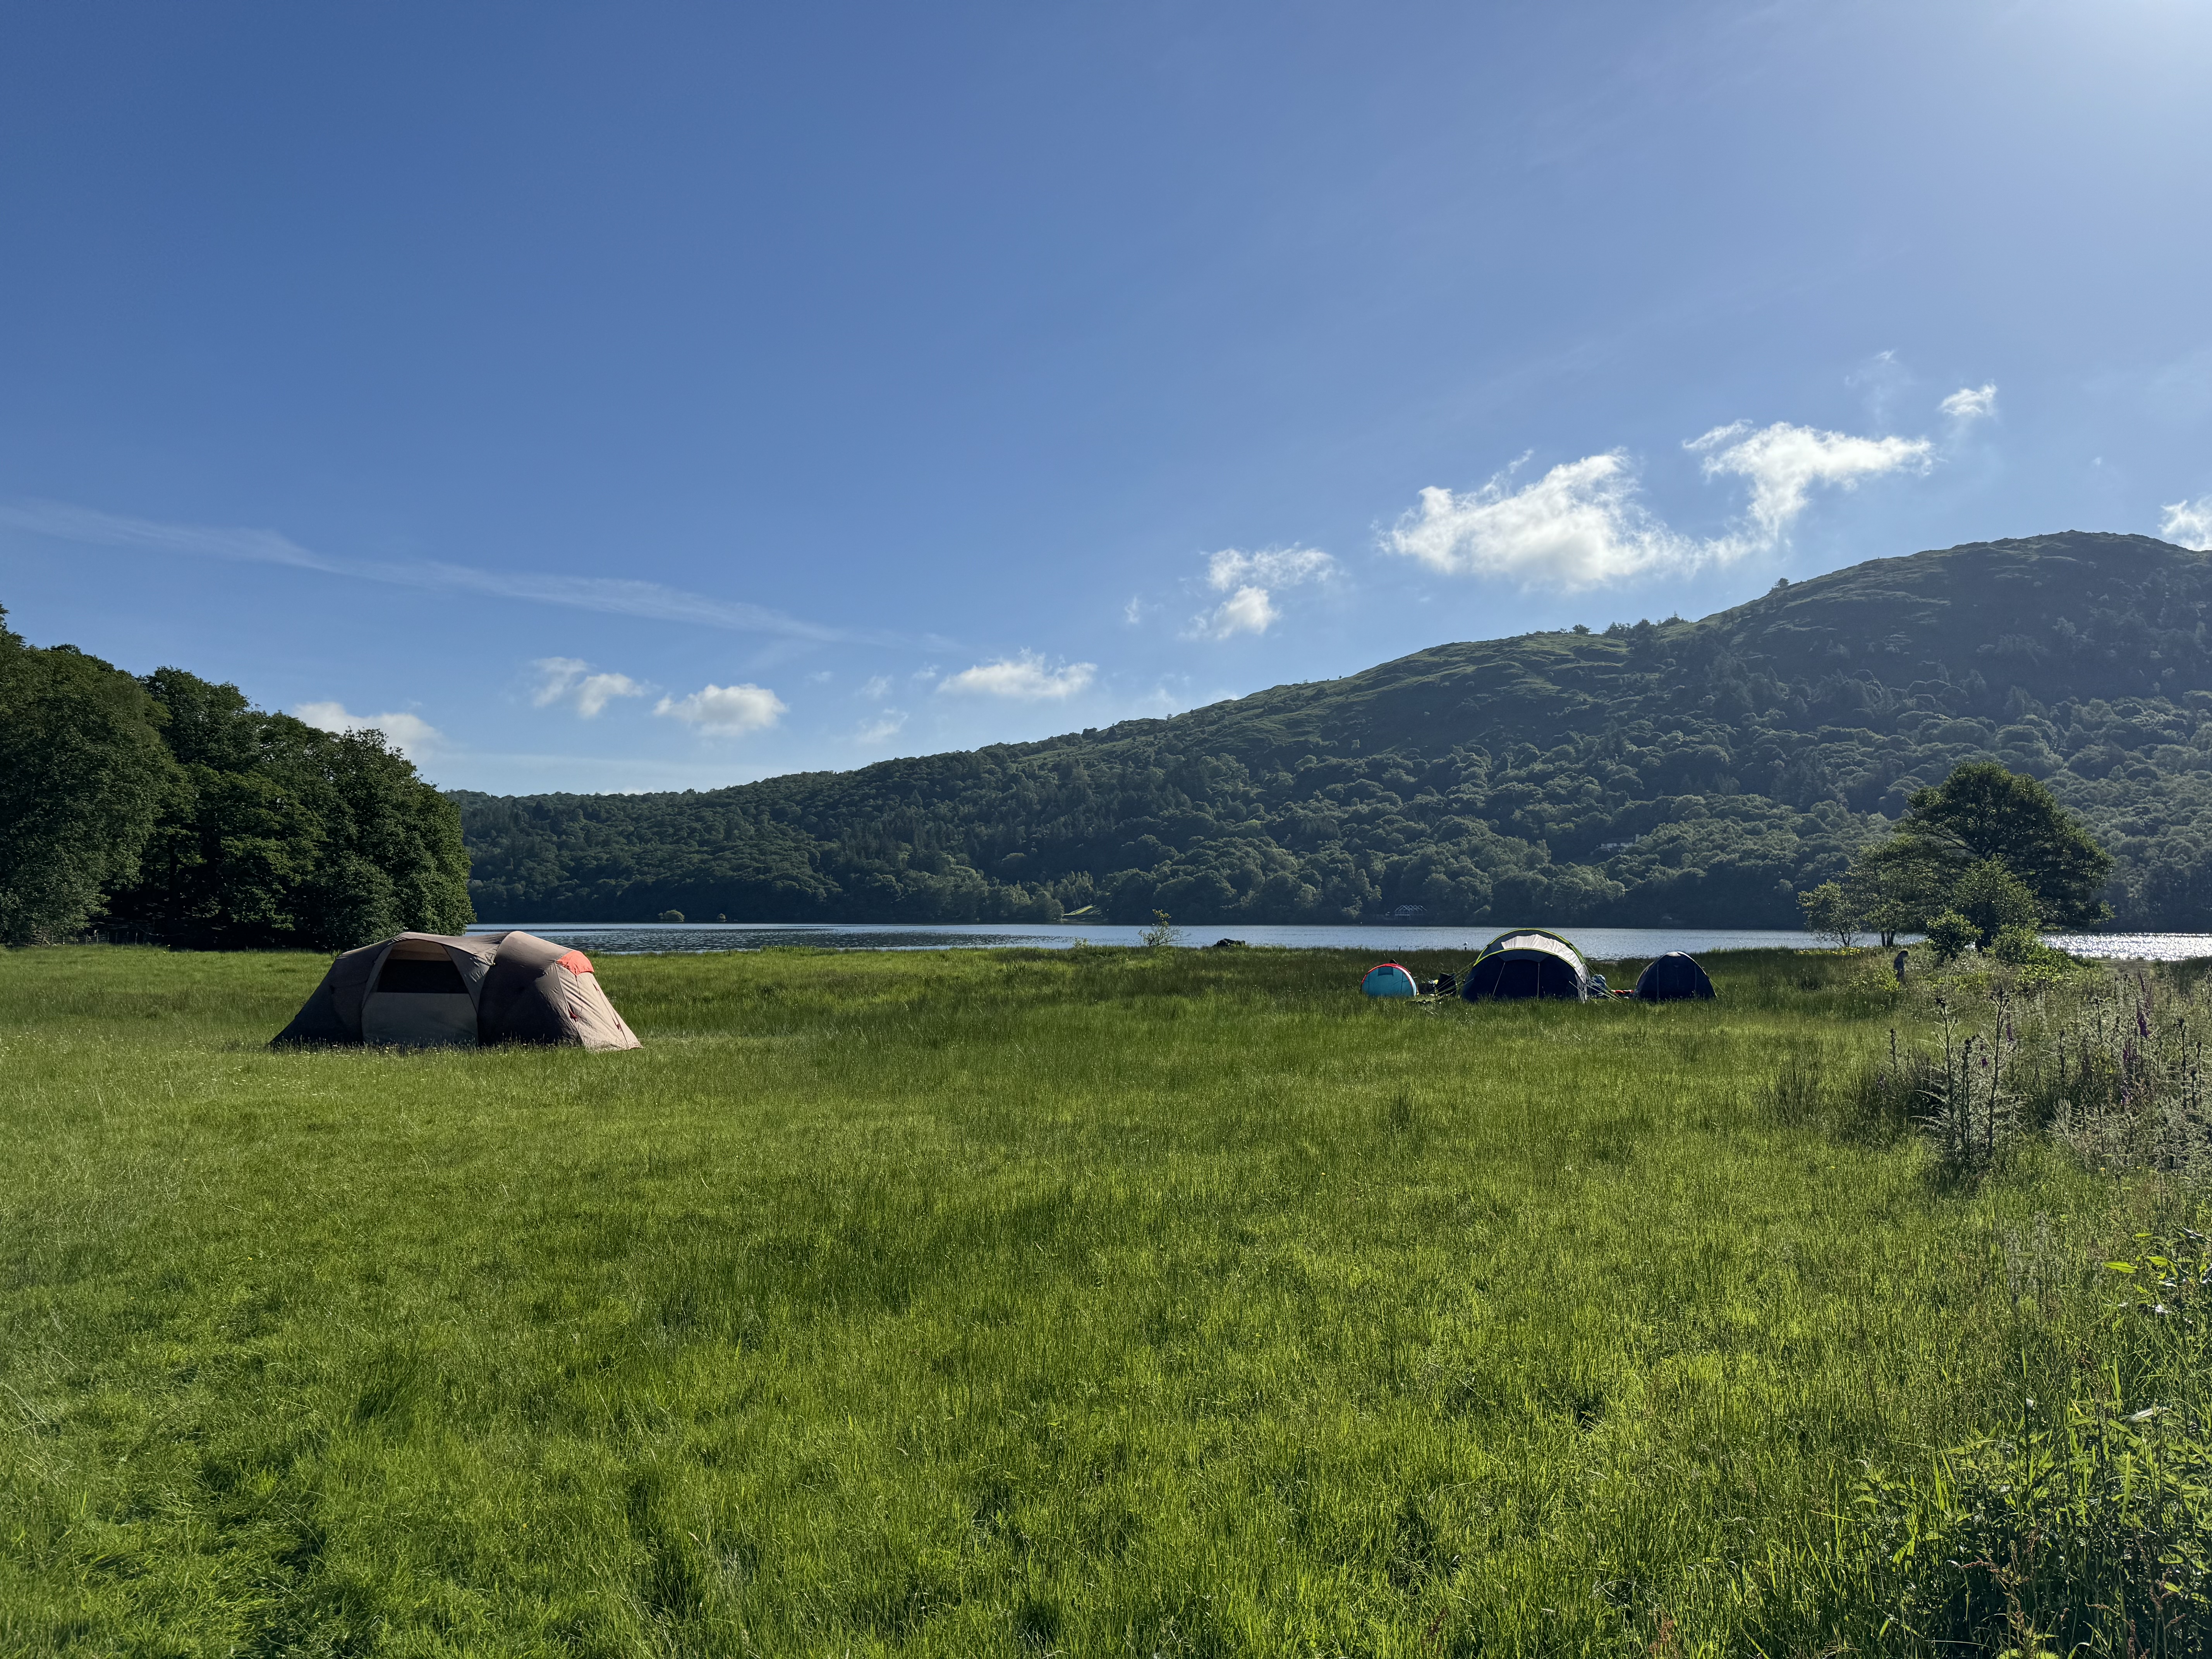 Les emplacements de camping peuvent tous être réservés via Hipcamp